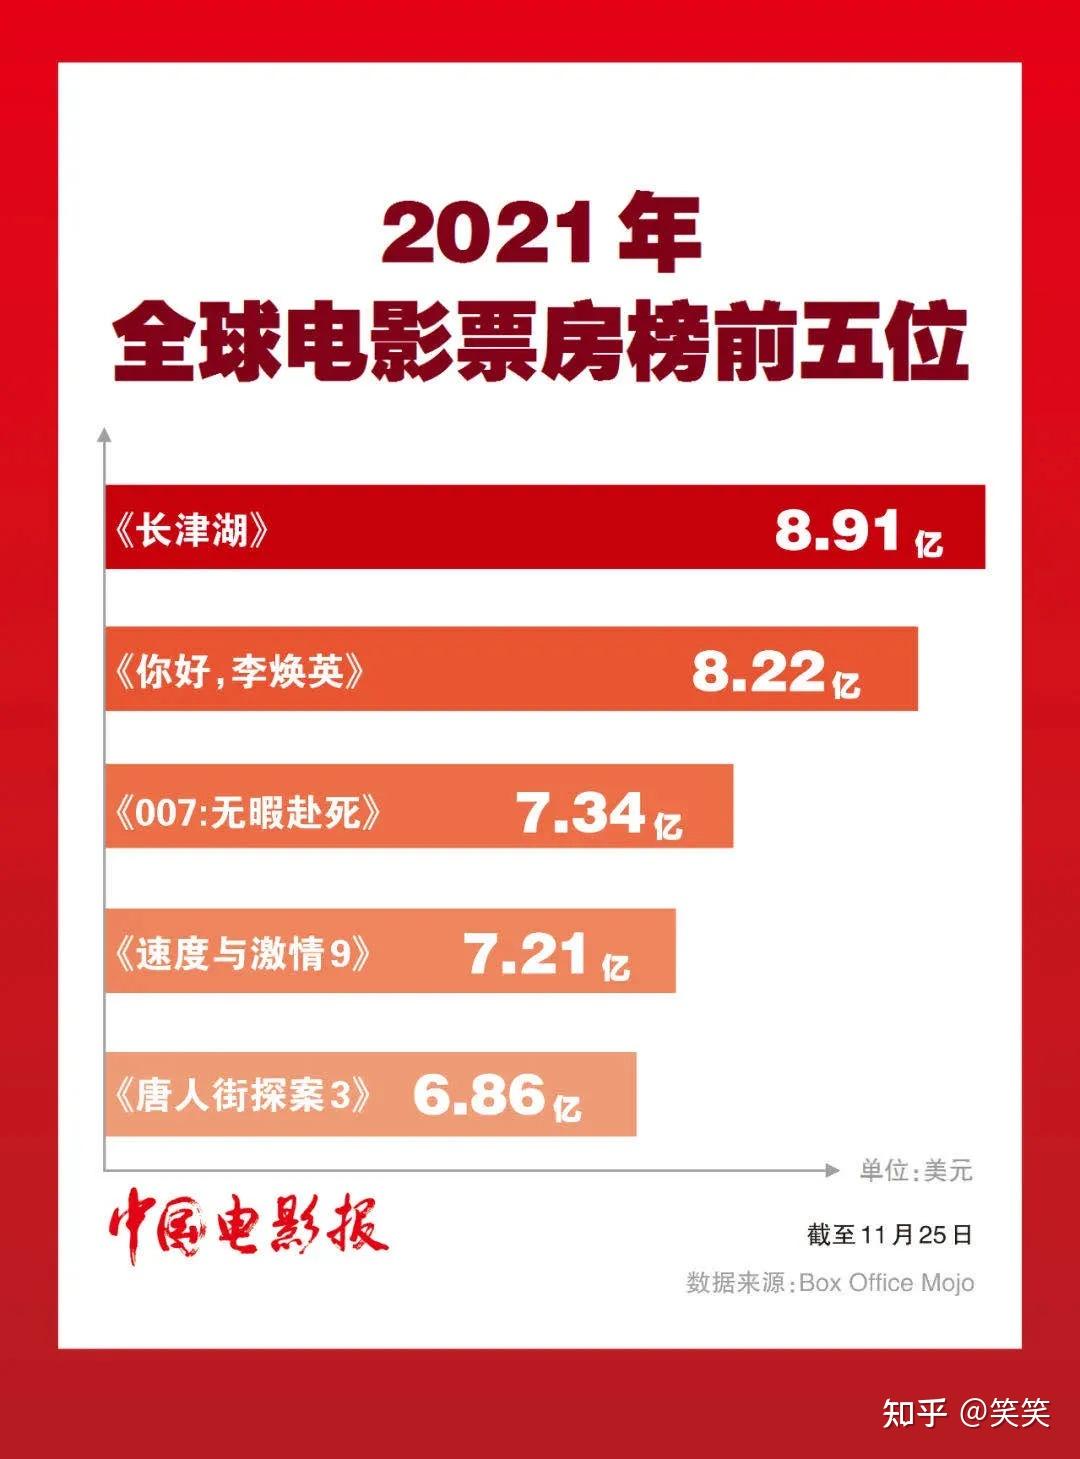 2021全球电影票房排行前五,3部中国电影上榜!